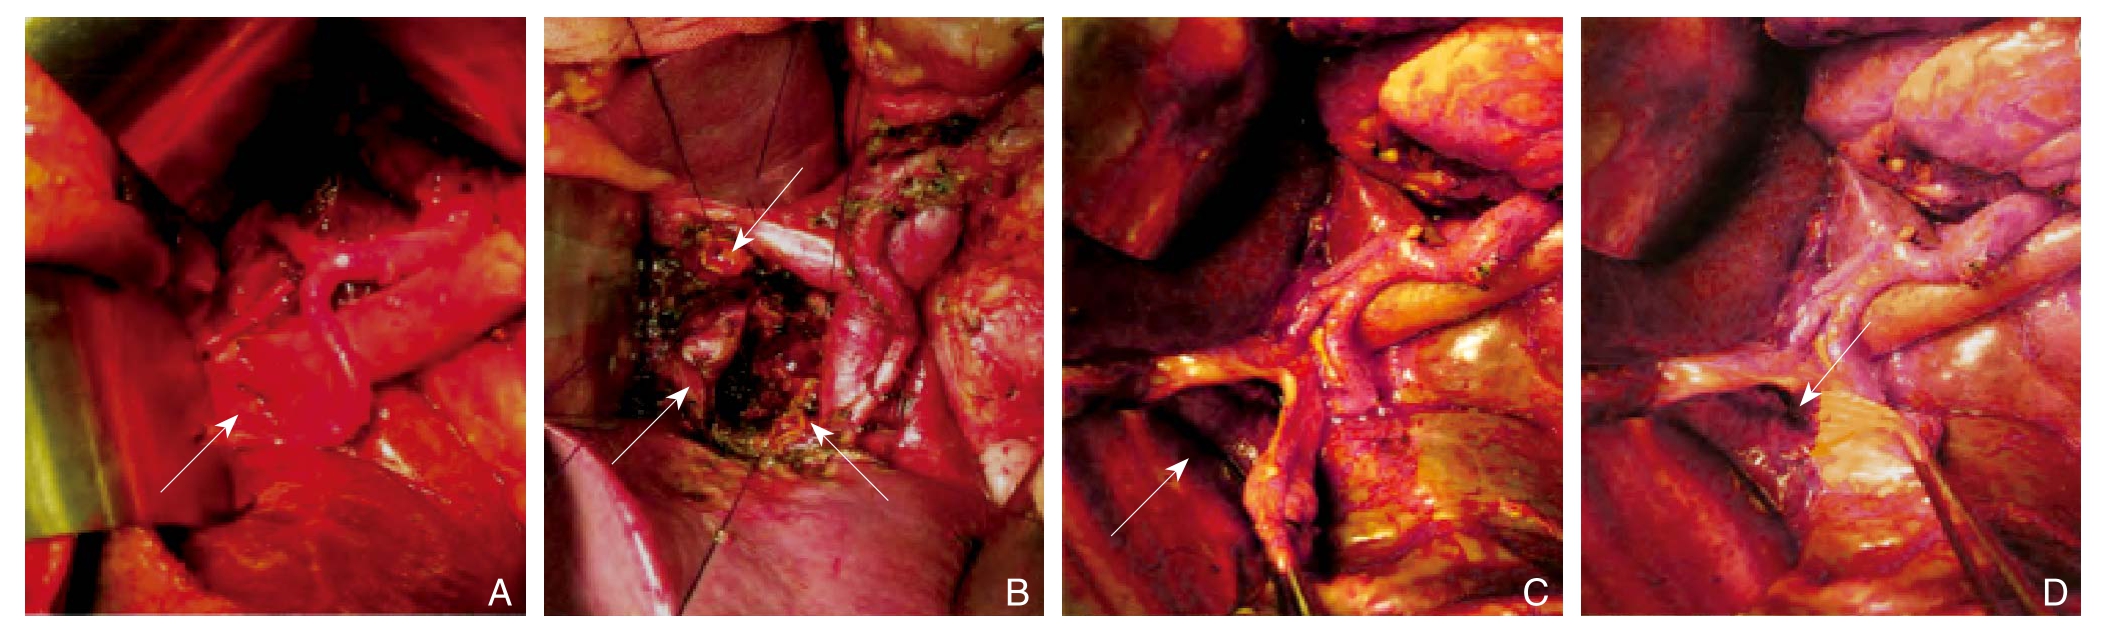 肝圆韧带间置肠肝吻合术在肝门区肿瘤外科治疗中的应用价值